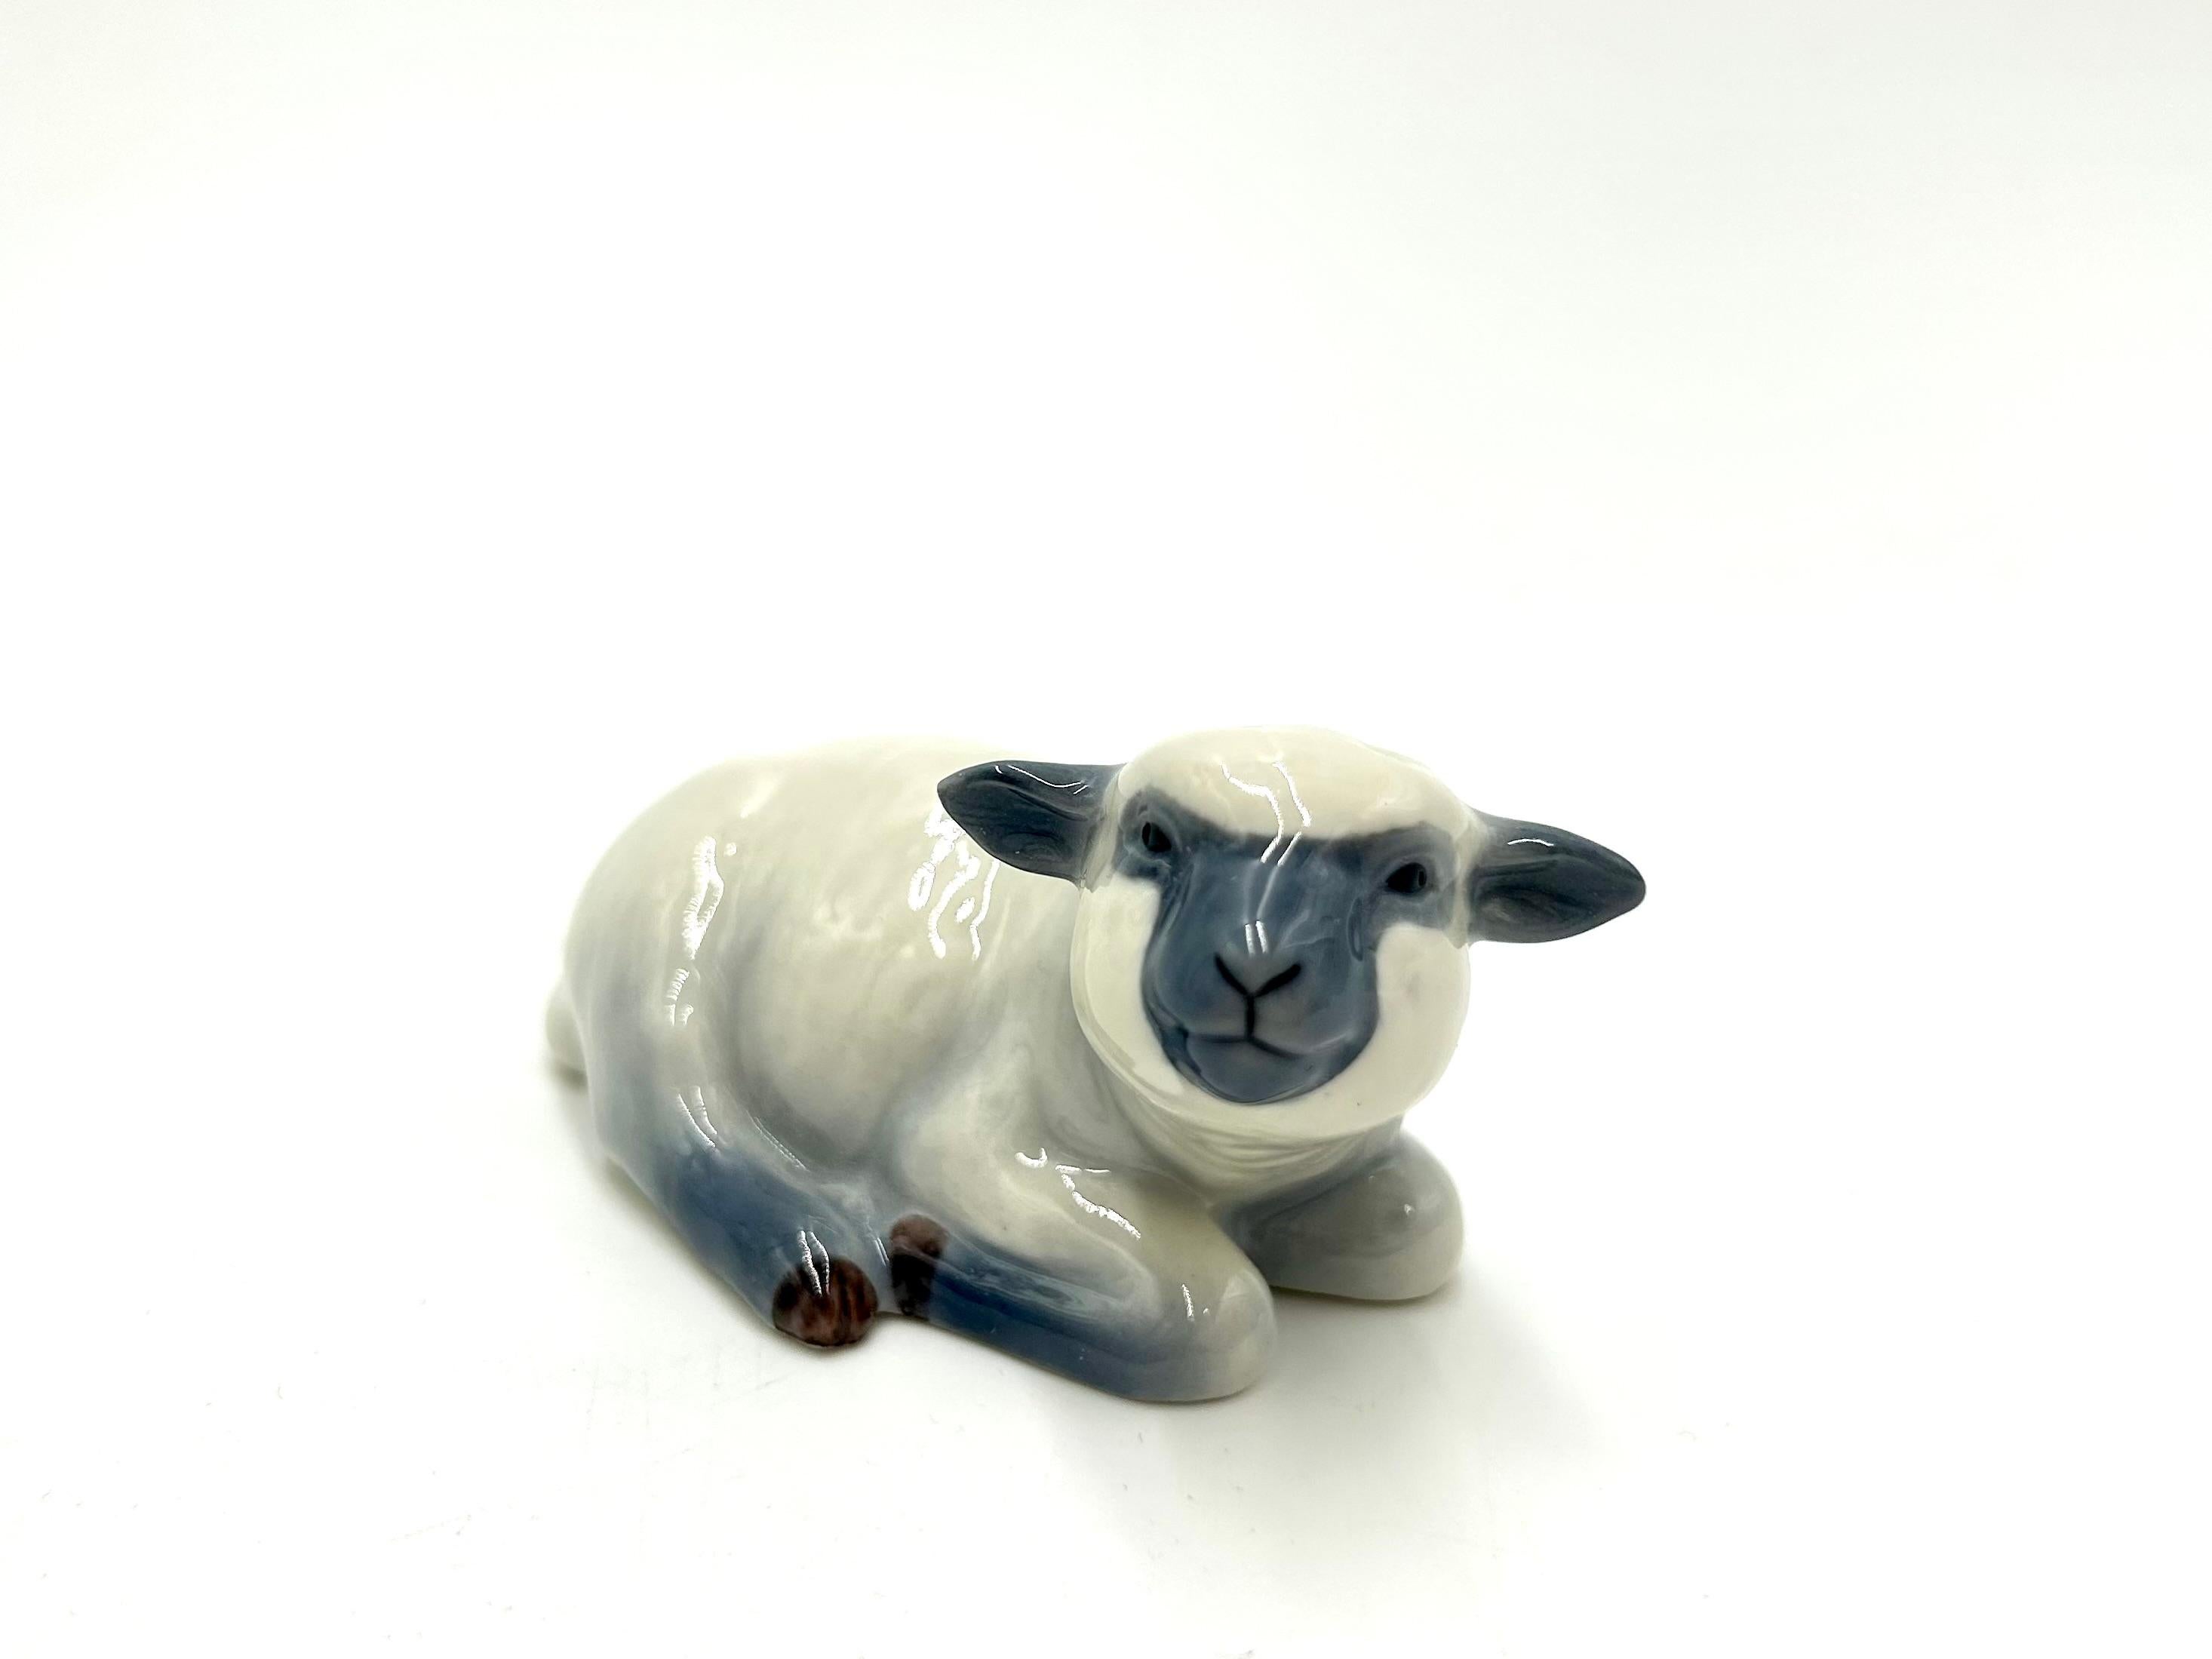 Figurine de mouton en porcelaine

Produit par la manufacture danoise Royal Copenhagen

Production contemporaine

Très bon état, sans dommage.

hauteur : 4cm

largeur : 7cm

profondeur : 4cm